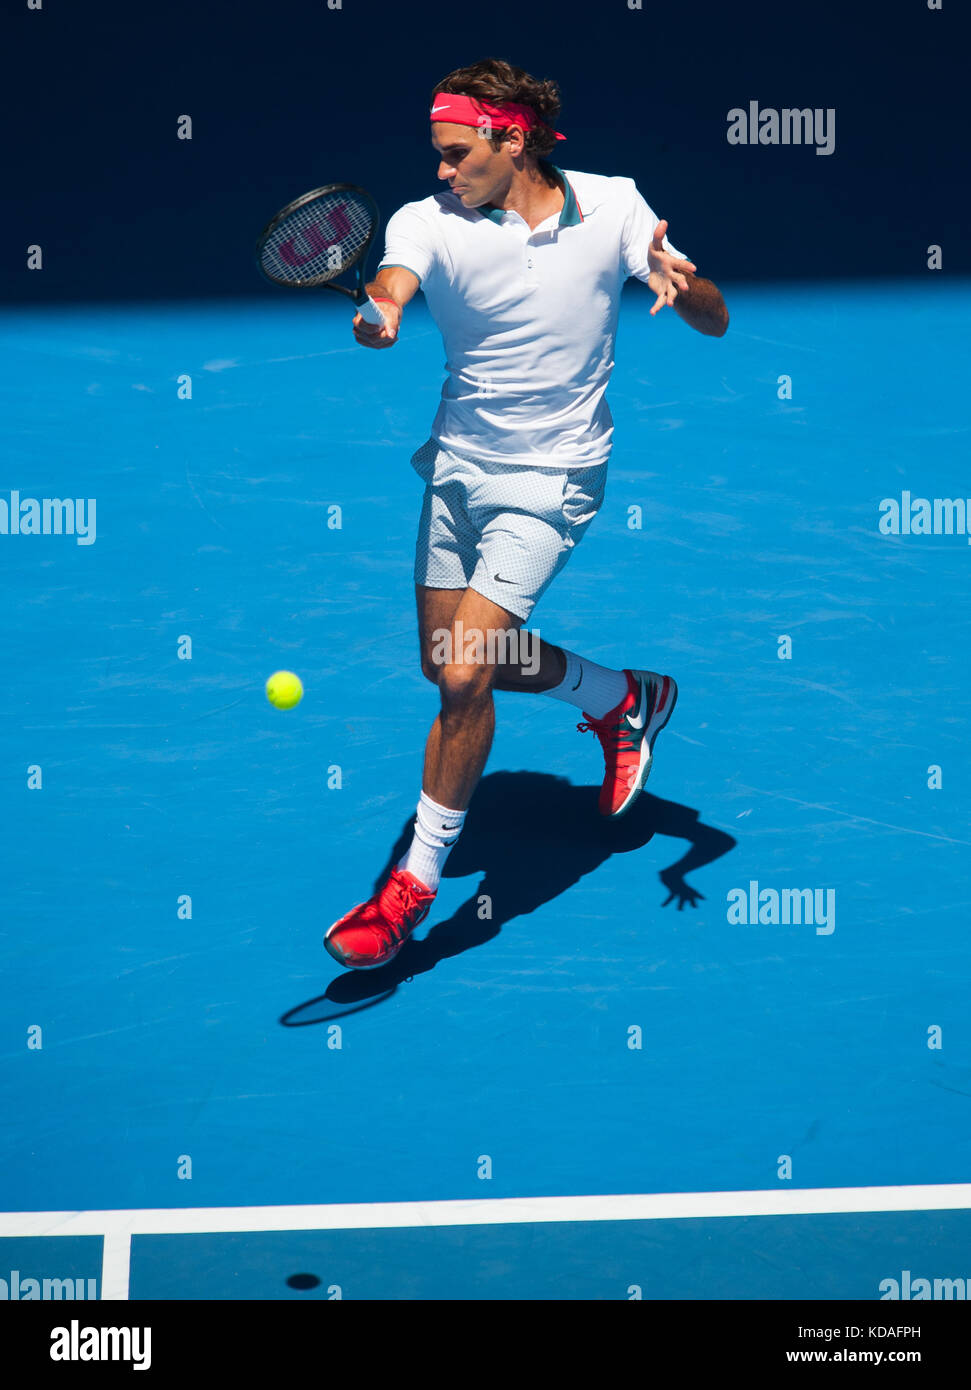 Roger Federer (SUI) en día 2 del Abierto de Australia juega como las temperaturas se elevaron a 43C, 109.4f . federer beat j. duckworth (AUS), 6-4, 6-4, 6-2 en la primera rou Foto de stock